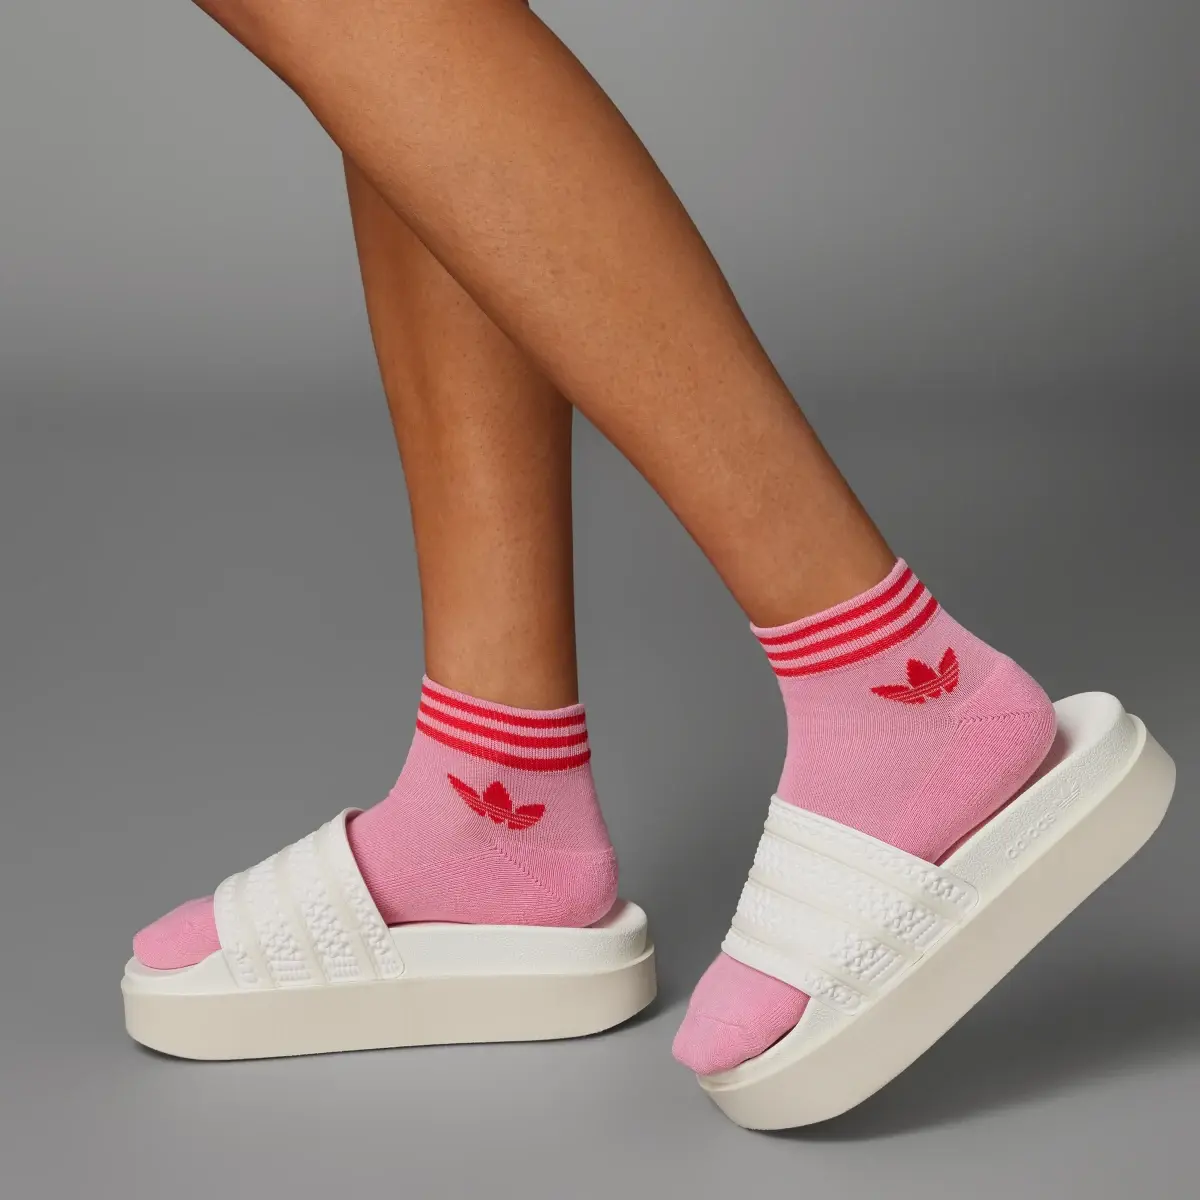 Adidas Island Club Trefoil Ankle Socks 3 Pairs. 2